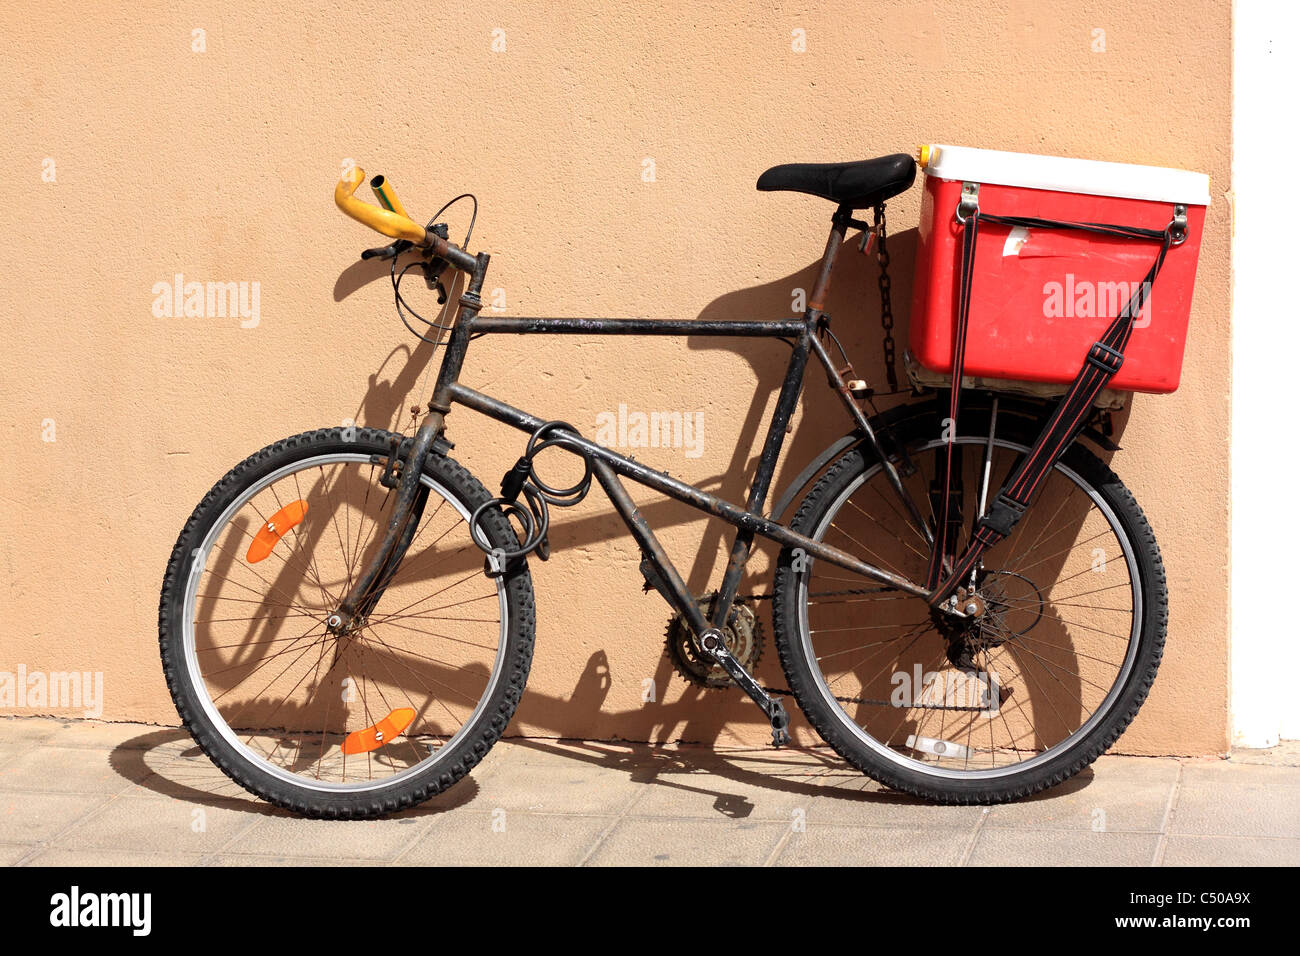 Un oxidado viejo negro bike apoyado contra una pared de color ocre. Una caja de enfriamiento está amarrado a una cremallera en la parte posterior de la bicicleta. Foto de stock